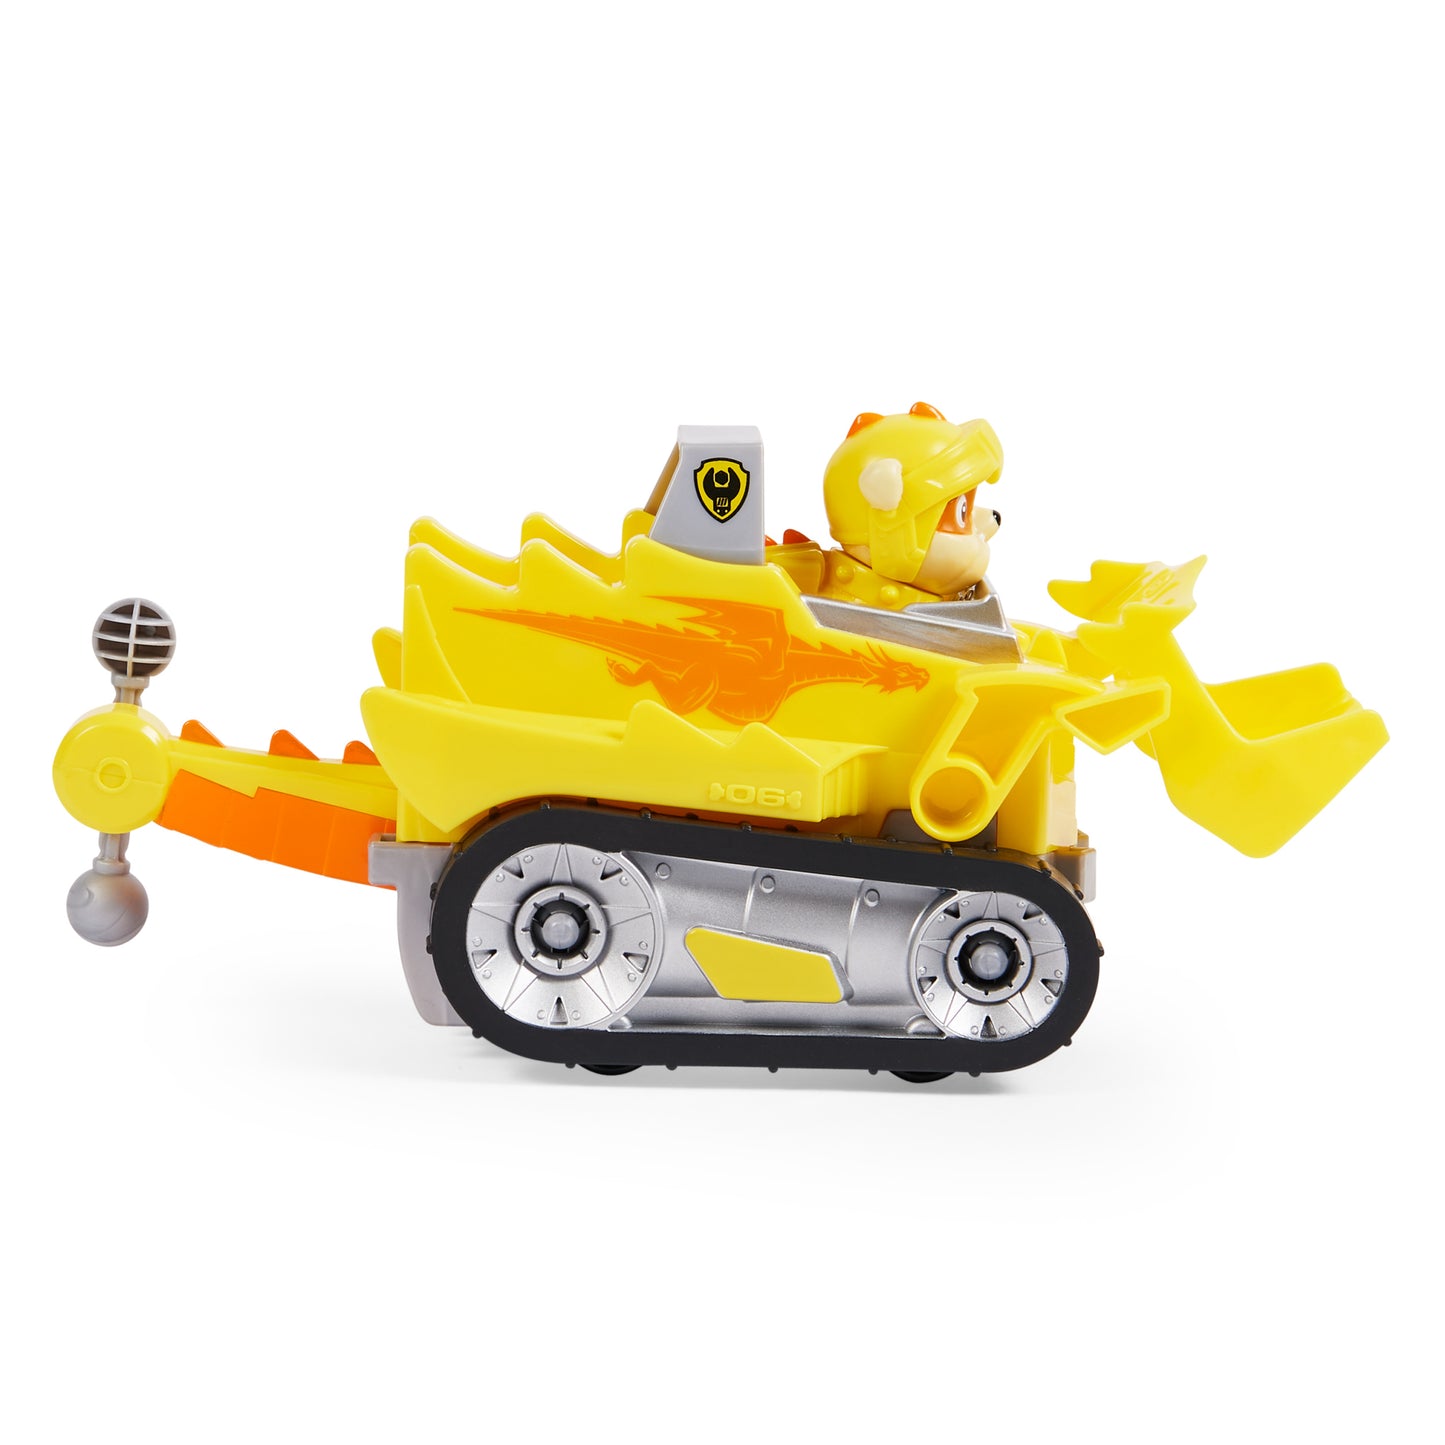 PAW PatrolRescue Knights Rubble Transforming Toy Car mit Sammlerstück Action Figur, Kinder Spielzeuge für 3 Jahre und älter